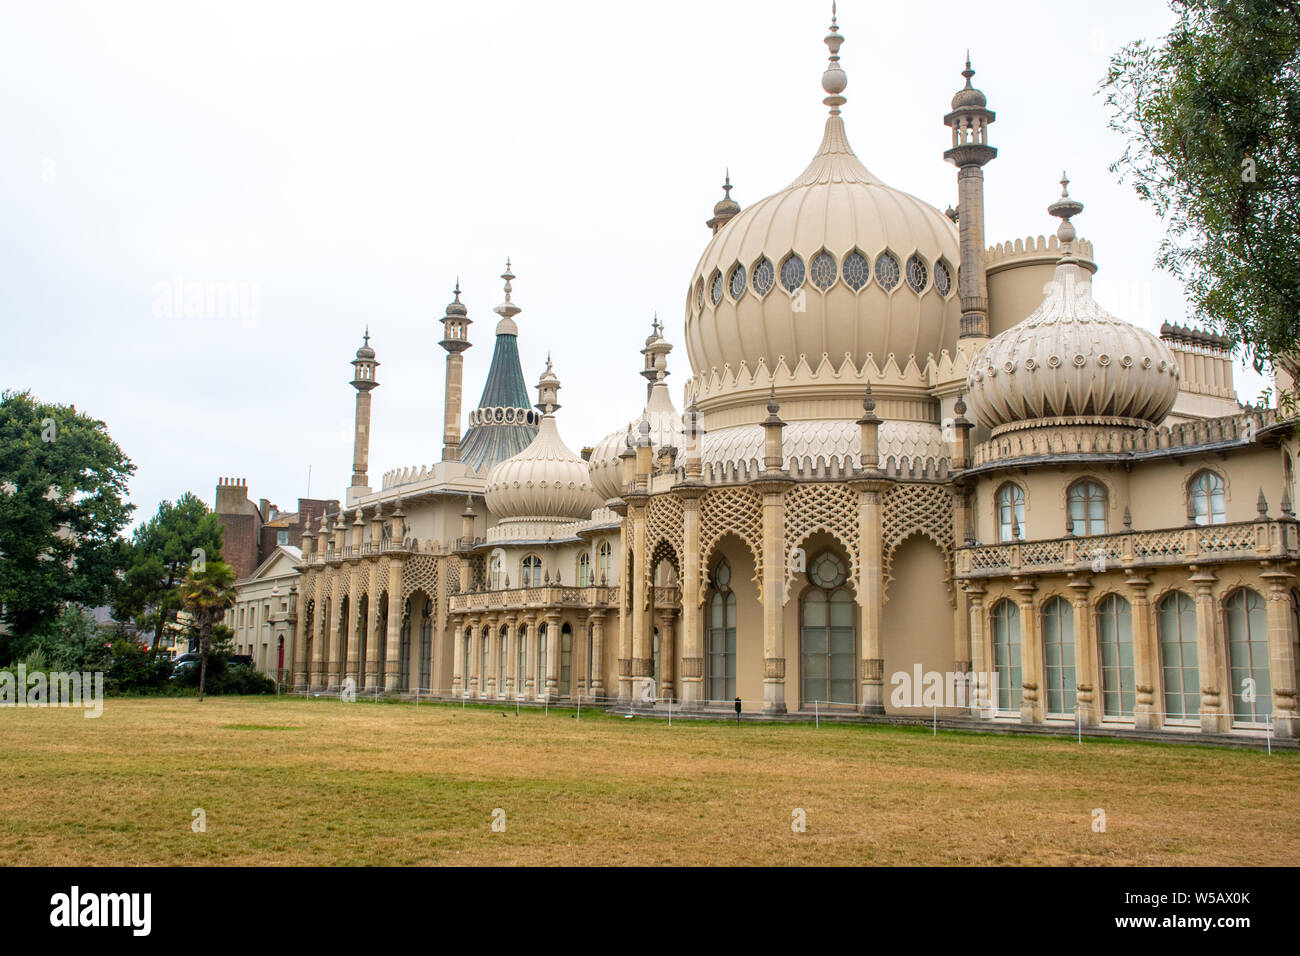 Anzeigen von Brighton Pavillon über Rasen Stockfoto